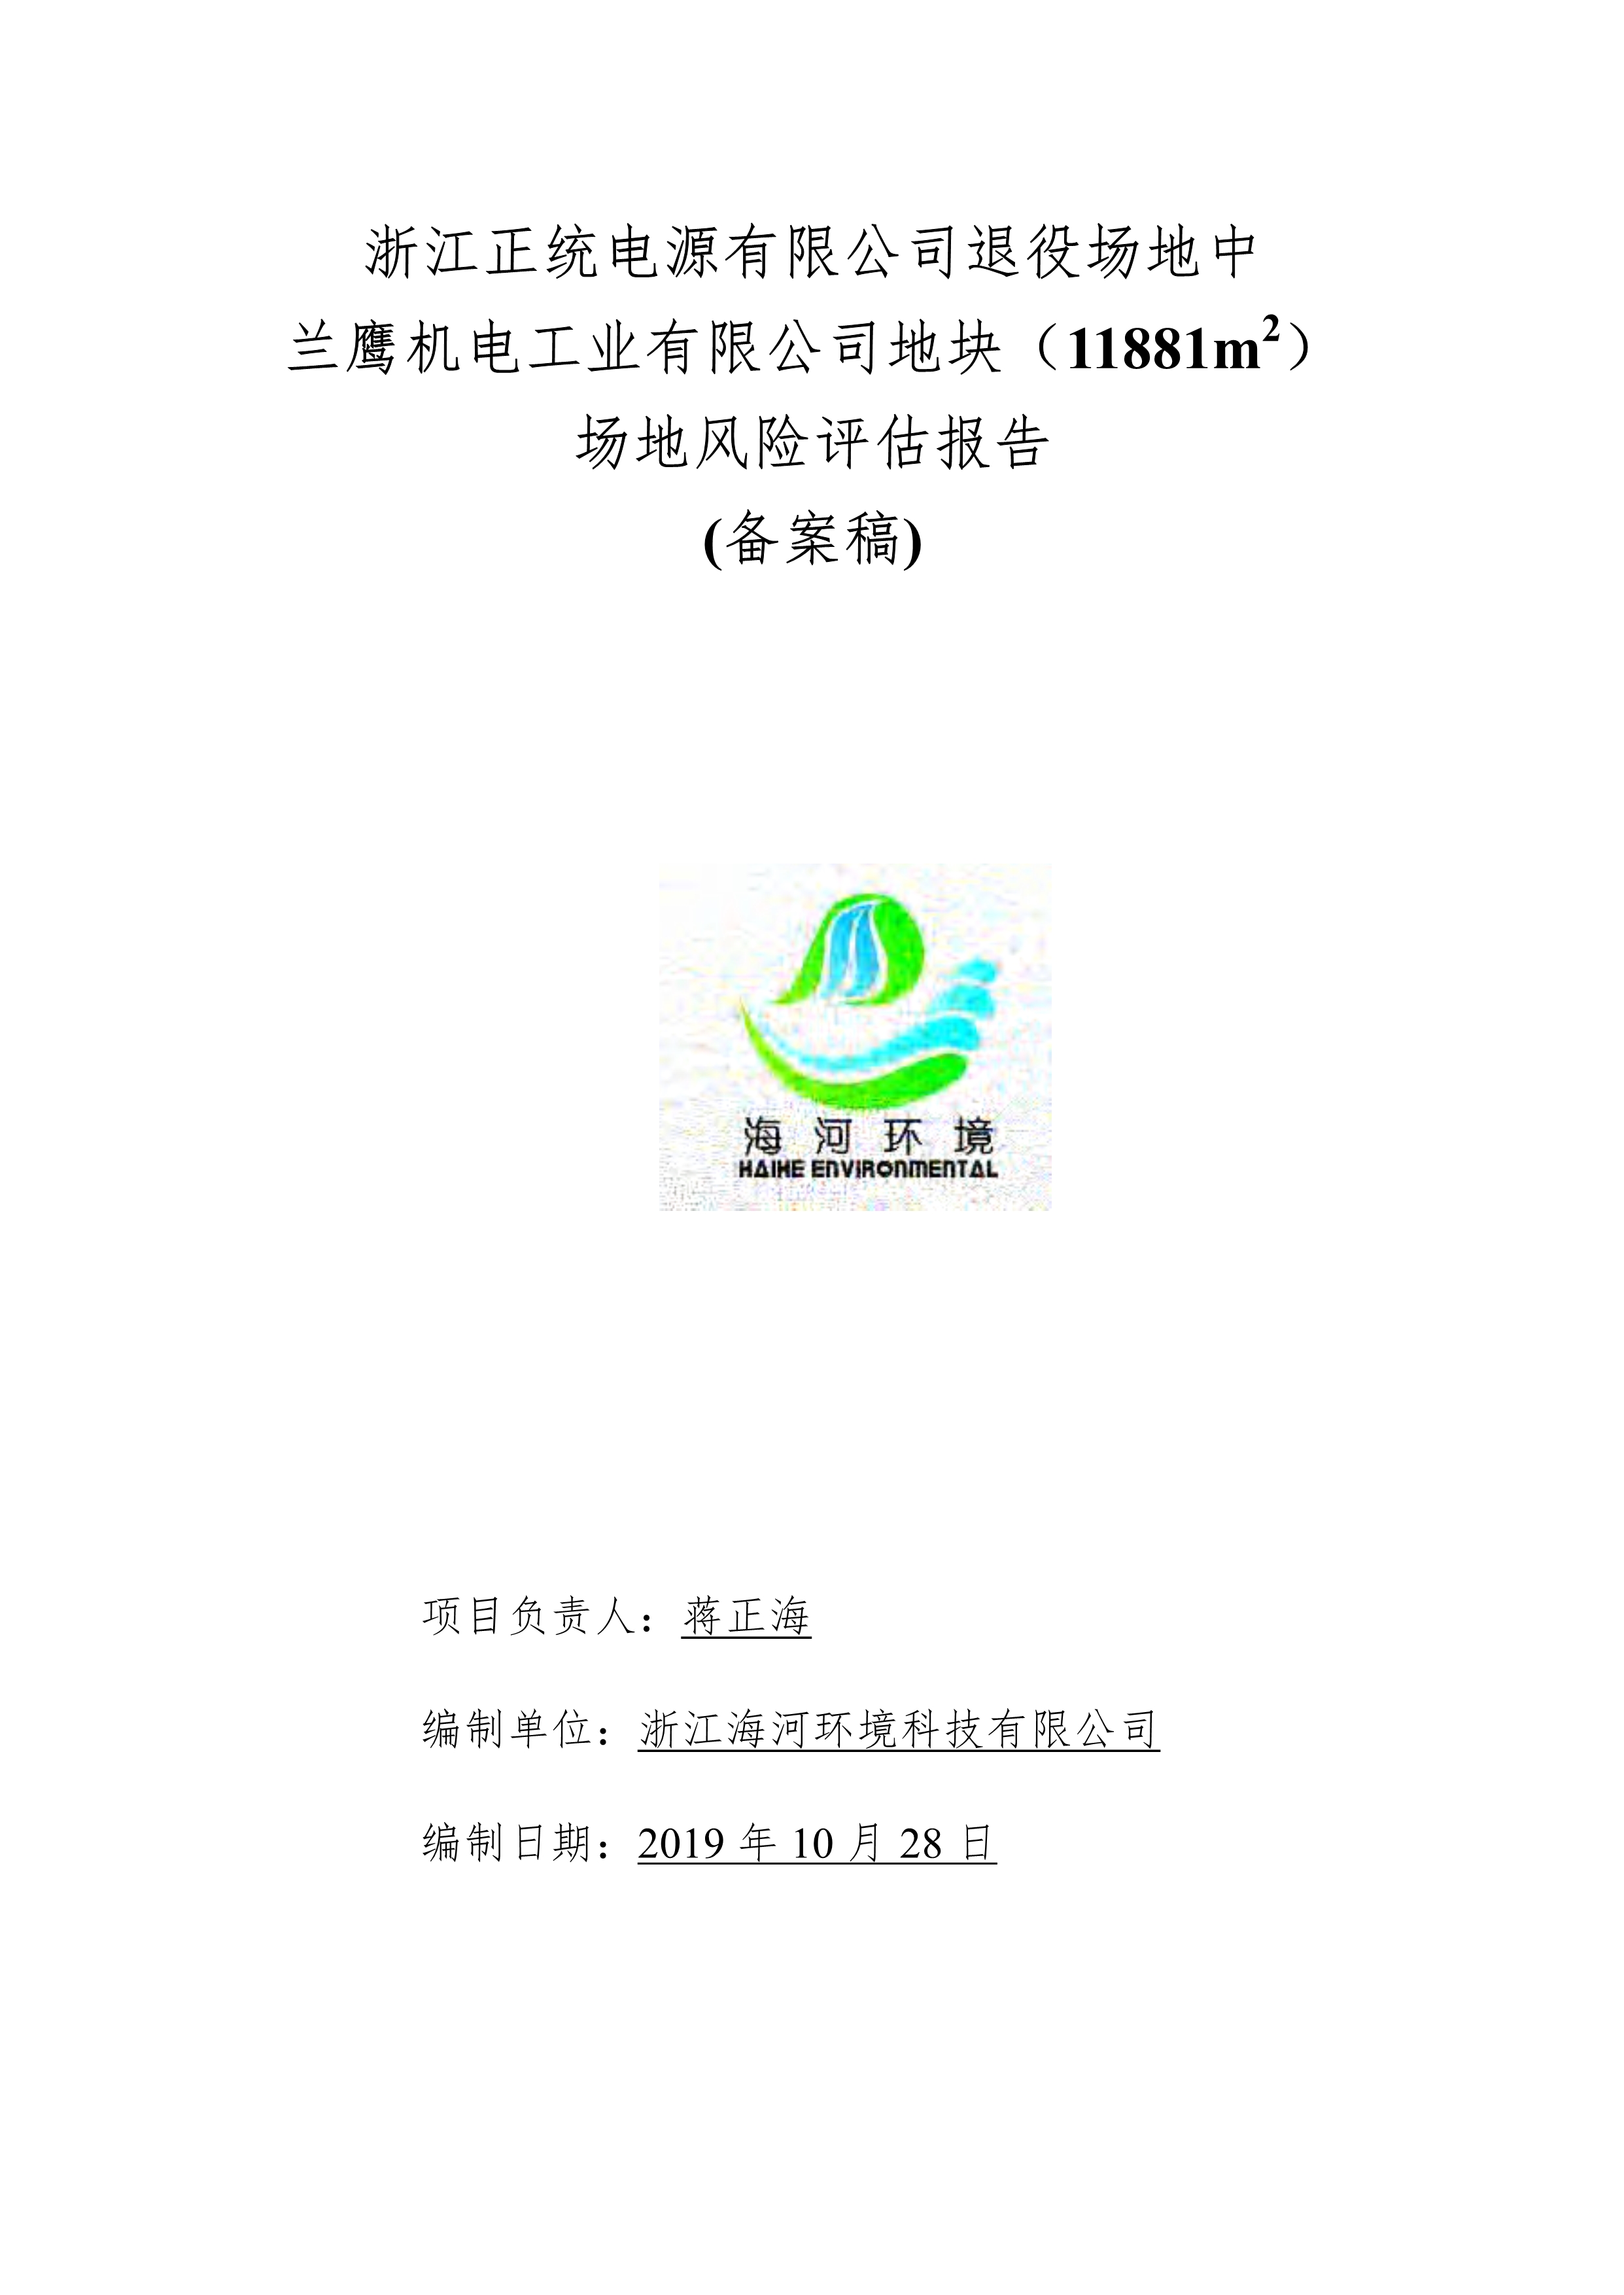 關于浙江正統電源有限公司退役場地中蘭鷹機電工業有限公司地塊（11881m2）場地風險評估報告公示